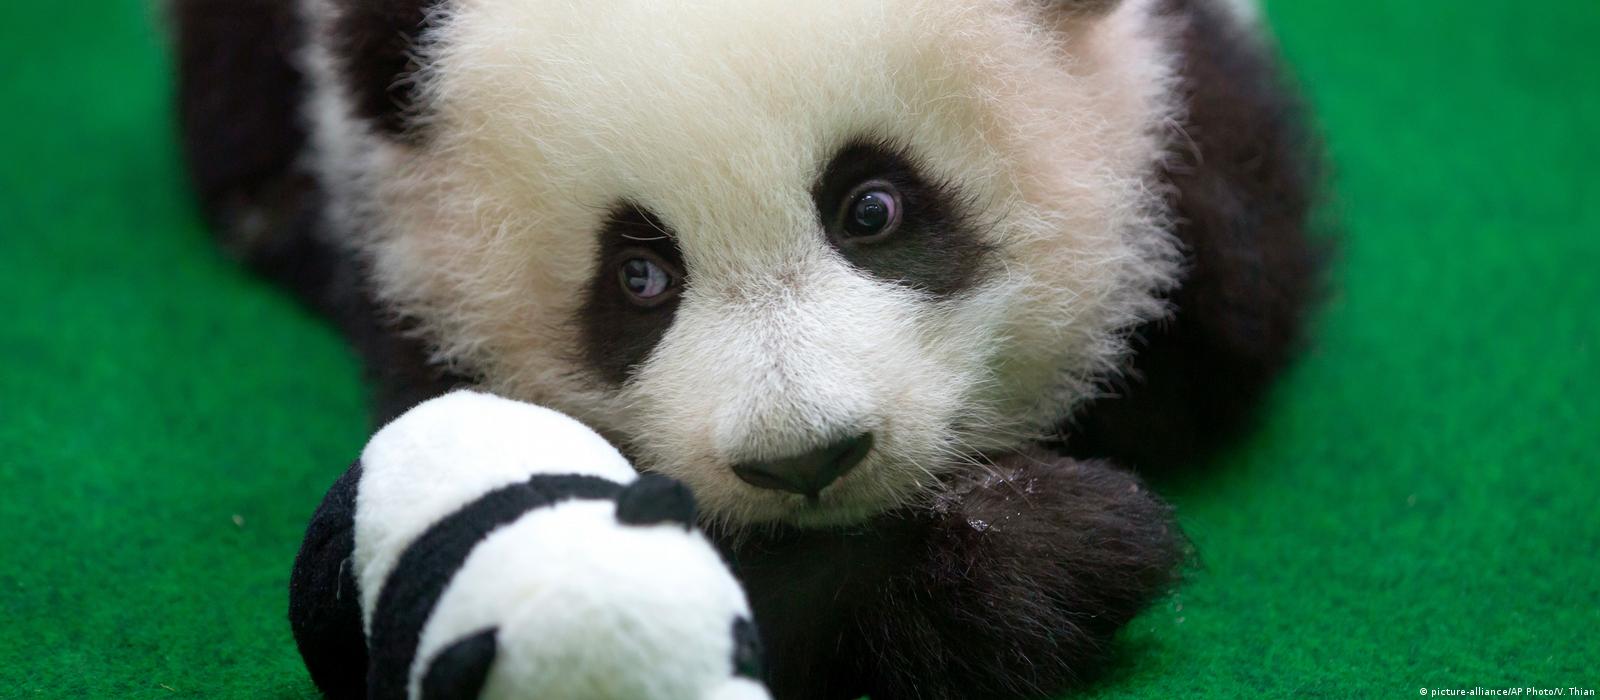 Baby panda makes public debut at Malaysia zoo – DW – 05/26/2018